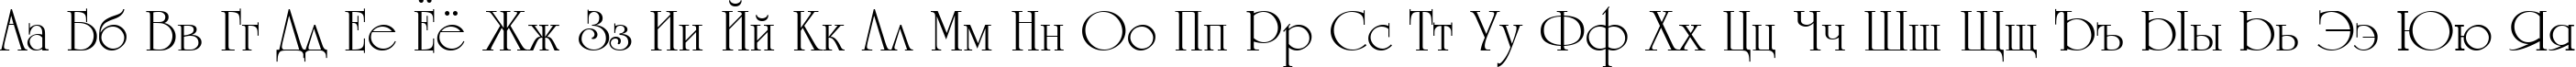 Пример написания русского алфавита шрифтом UniCyrillic